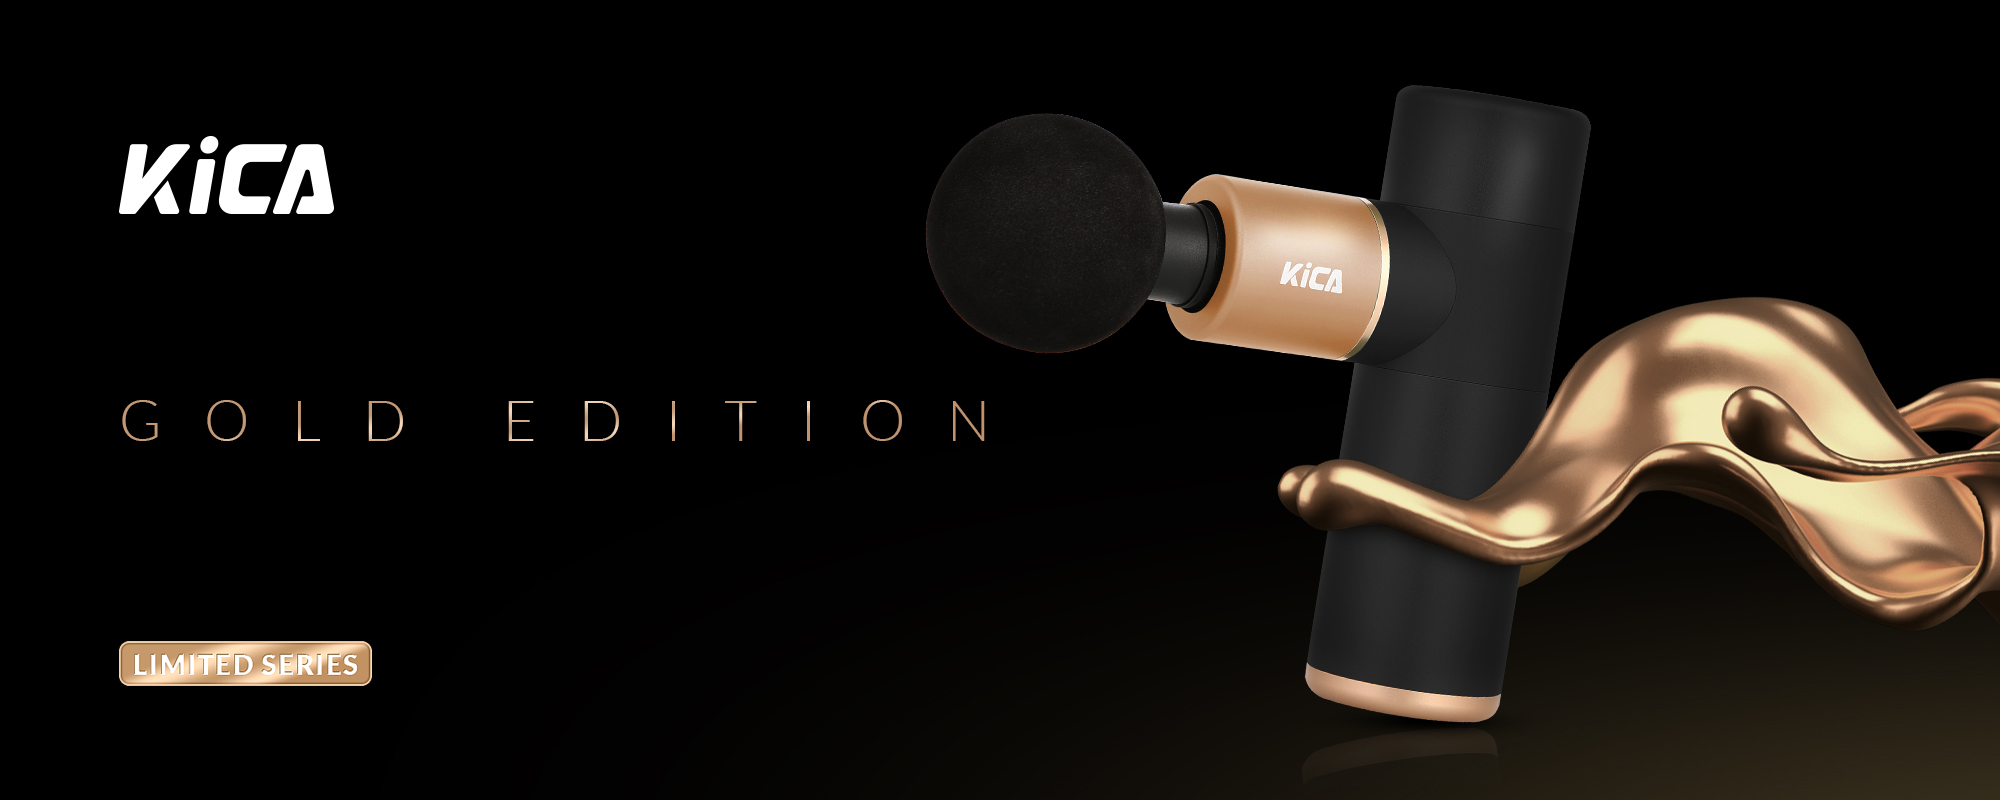 Masażer wibracyjny FeiyuTech KiCA Gold Edition - czarny